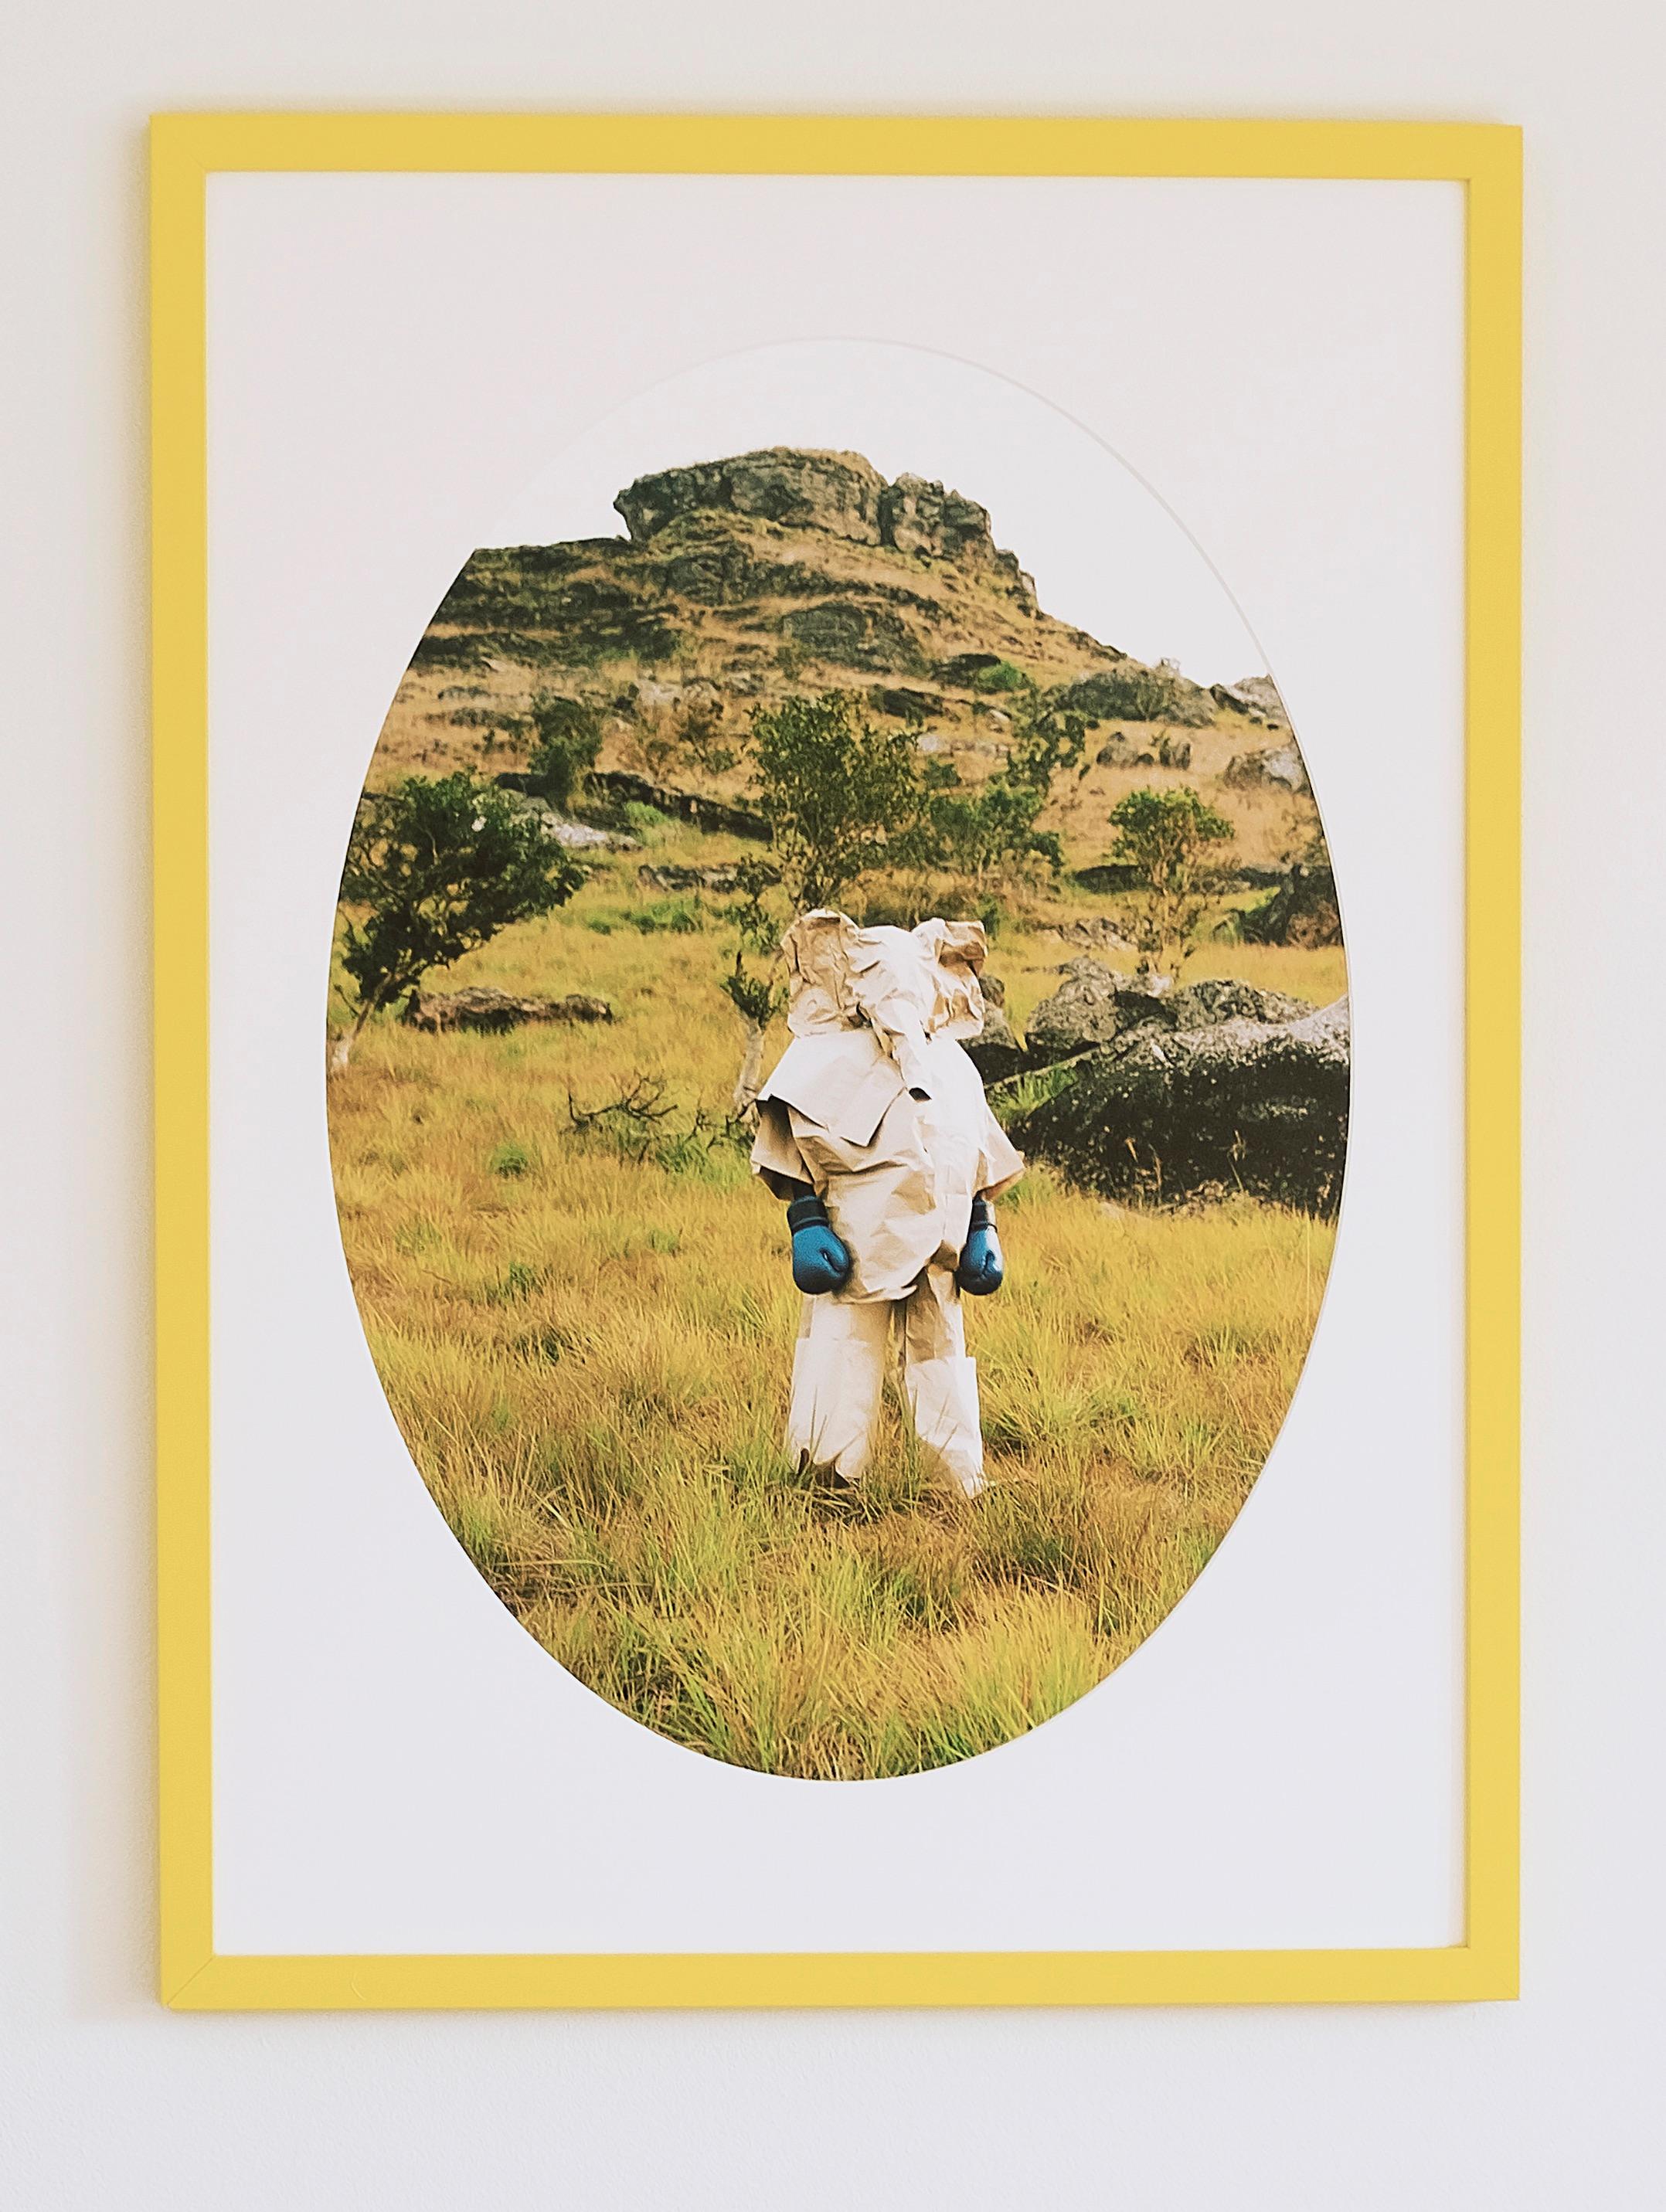 Verena Prenner
Elefant mit den blauen Boxhandschuhen - Zeitgenössische Porträtfotografie
C-Print
Ed. 2/3+2 AP
Der Druck ist ungerahmt und wird mit einem vom Künstler signierten Aufkleber geliefert

